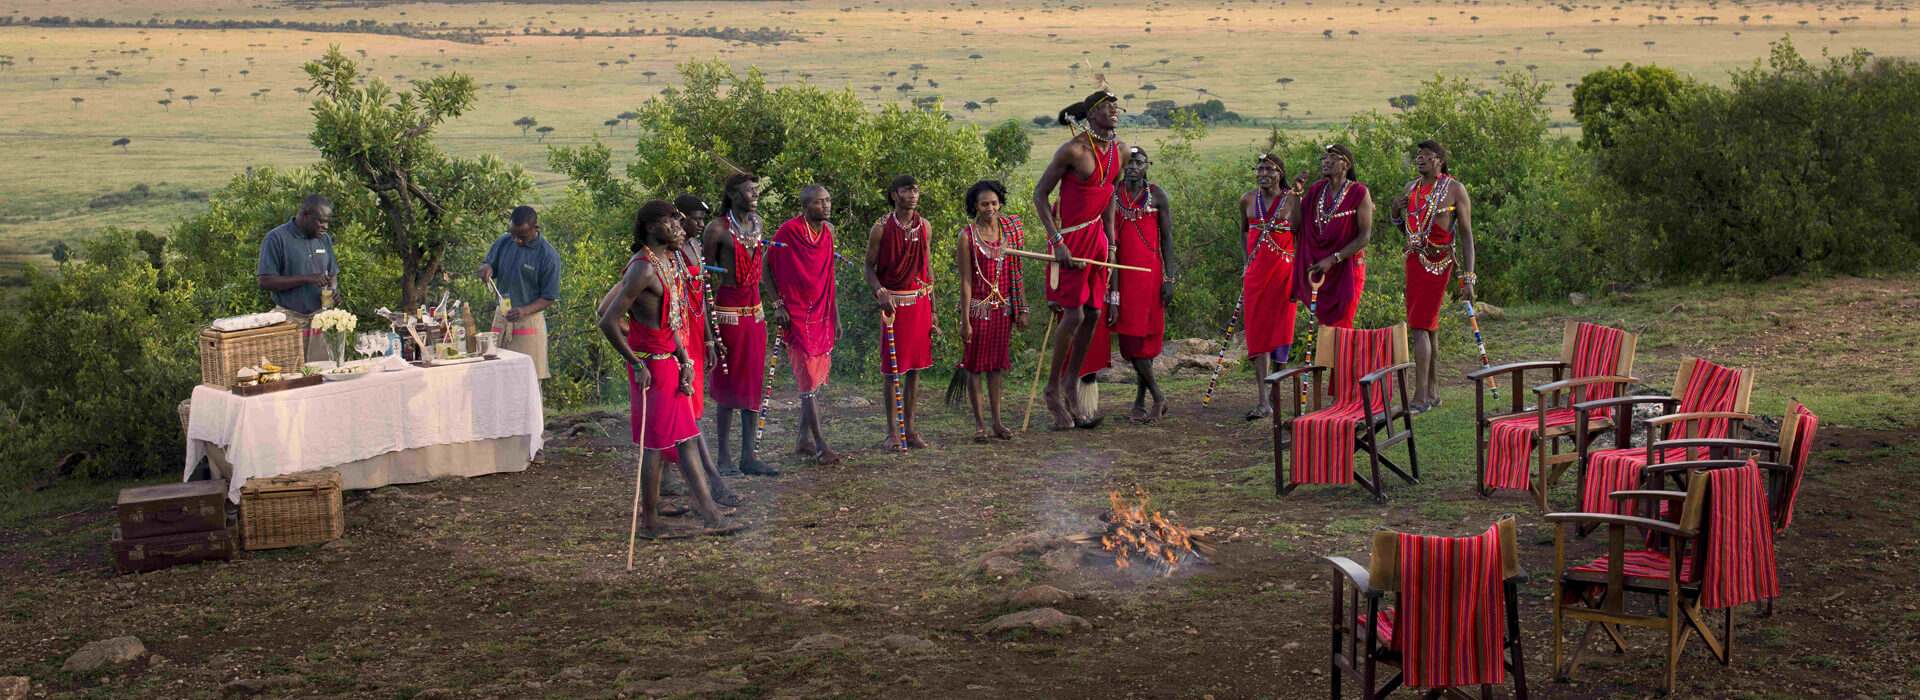 Masai Mara Hotels and Lodges